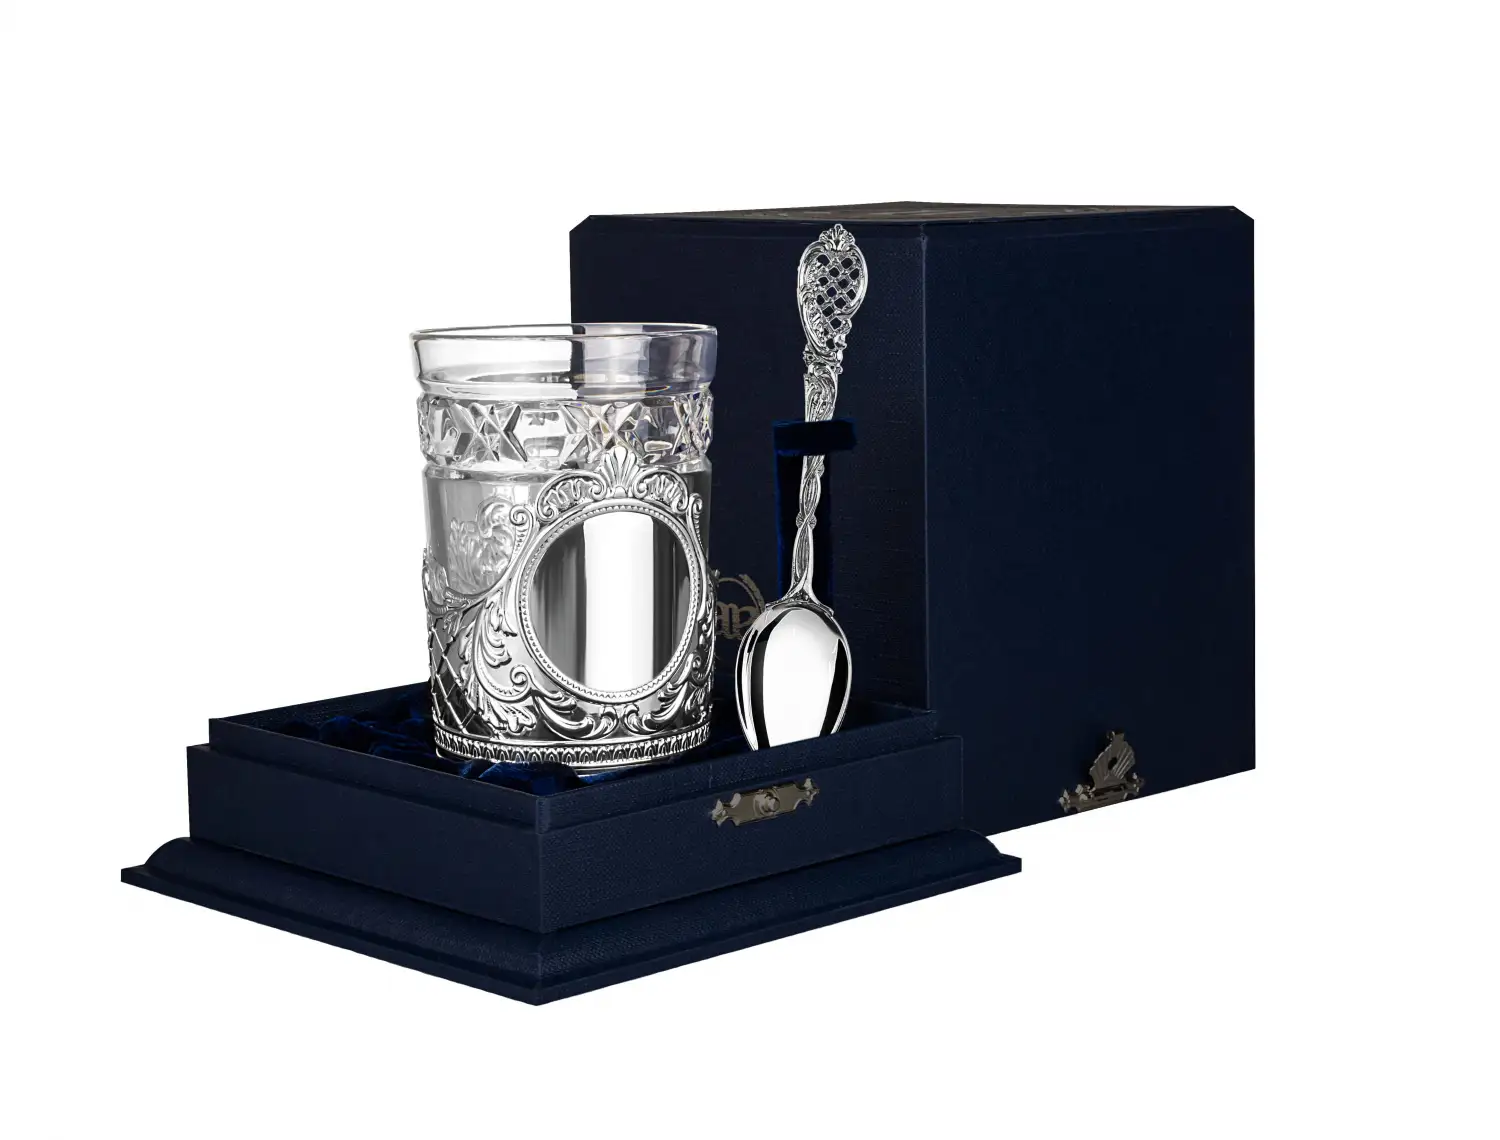 Набор для чая Барокко: ложка, стакан, подстаканник (Серебро 925) набор для чая герб ложка стакан подстаканник с позолотой серебро 925